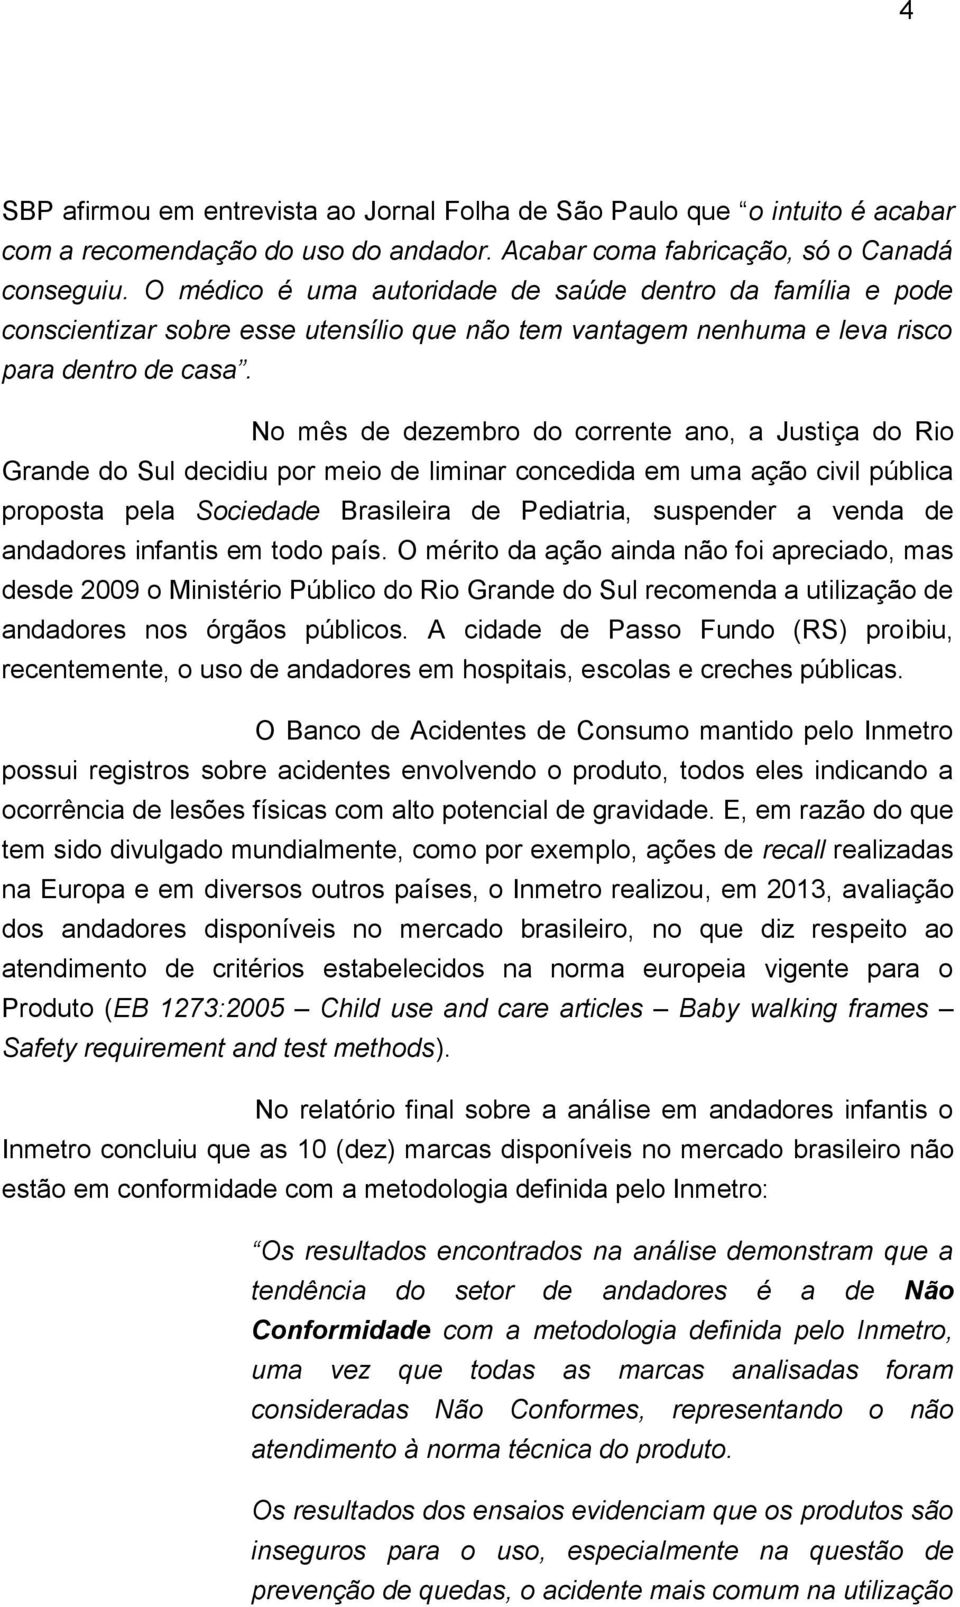 No mês de dezembro do corrente ano, a Justiça do Rio Grande do Sul decidiu por meio de liminar concedida em uma ação civil pública proposta pela Sociedade Brasileira de Pediatria, suspender a venda